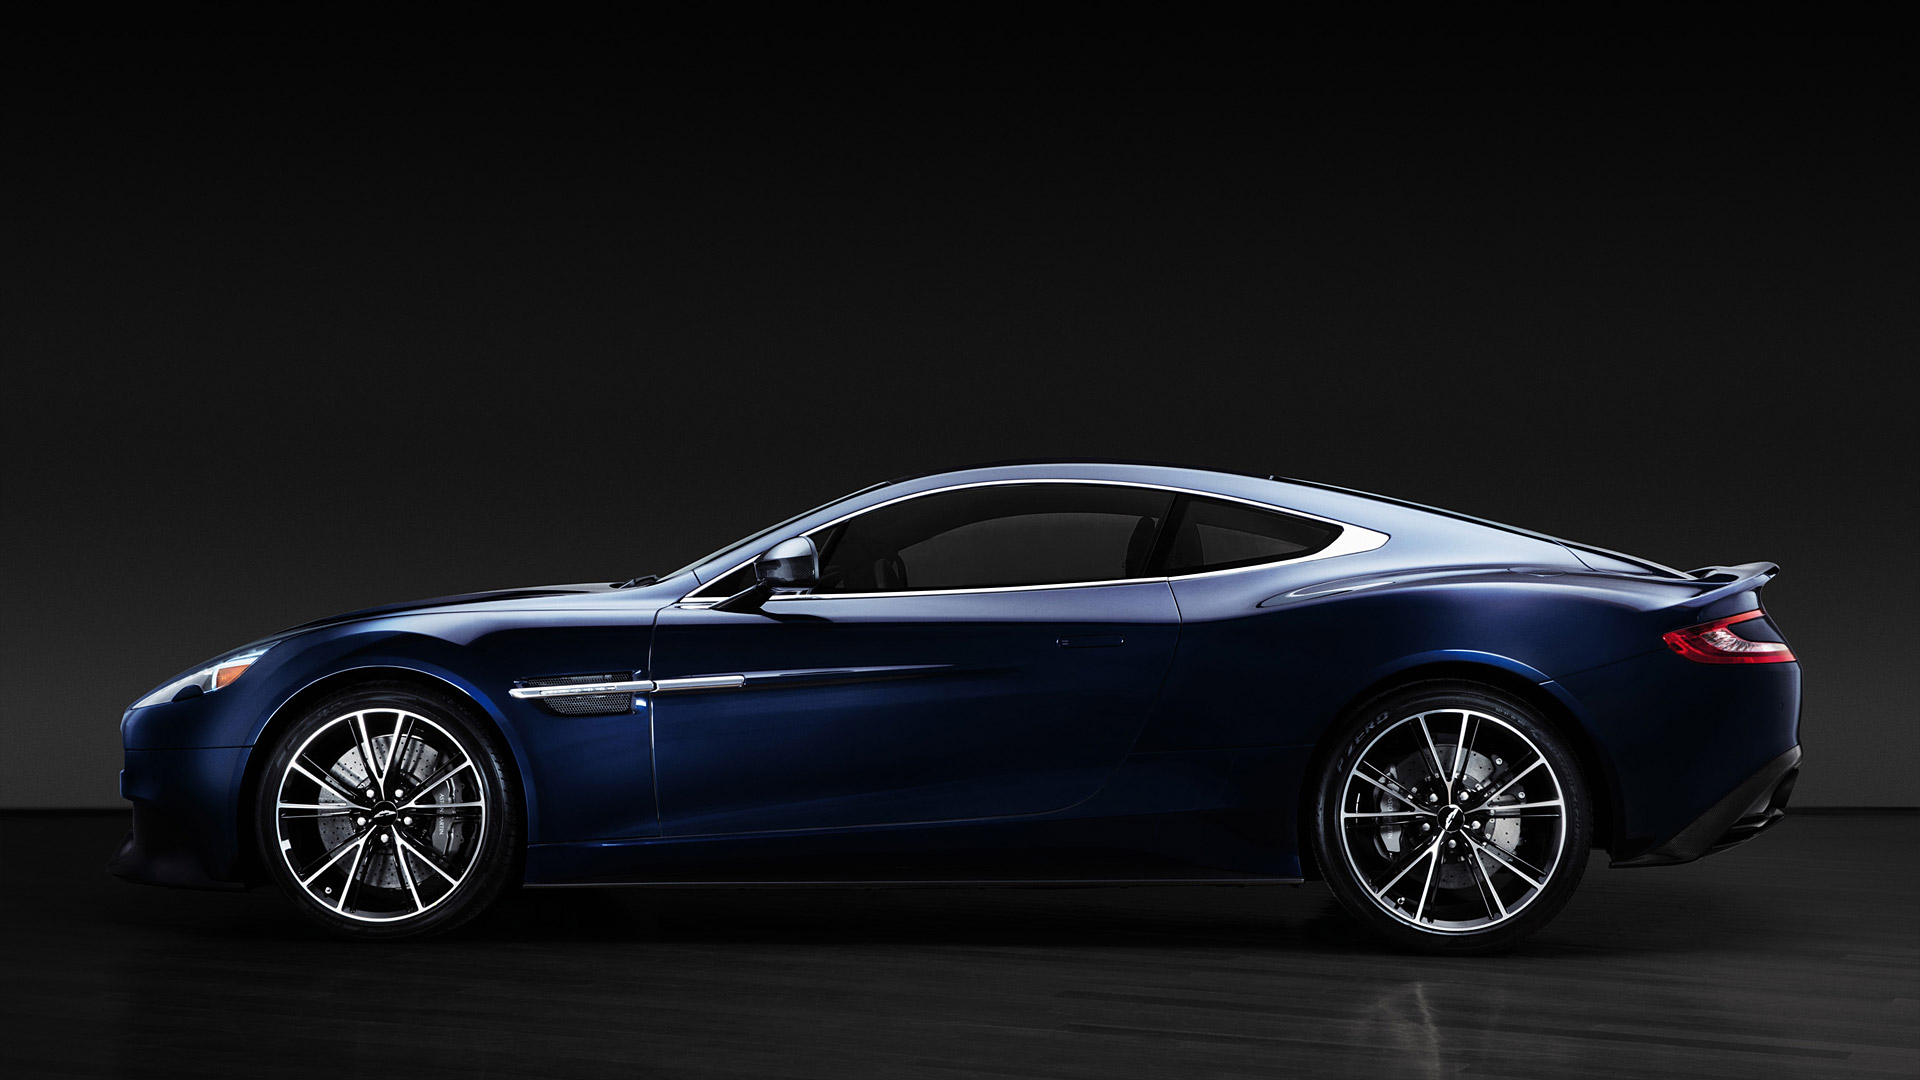  2013 Aston Martin Vanquish Centenary Edition= Wallpaper.